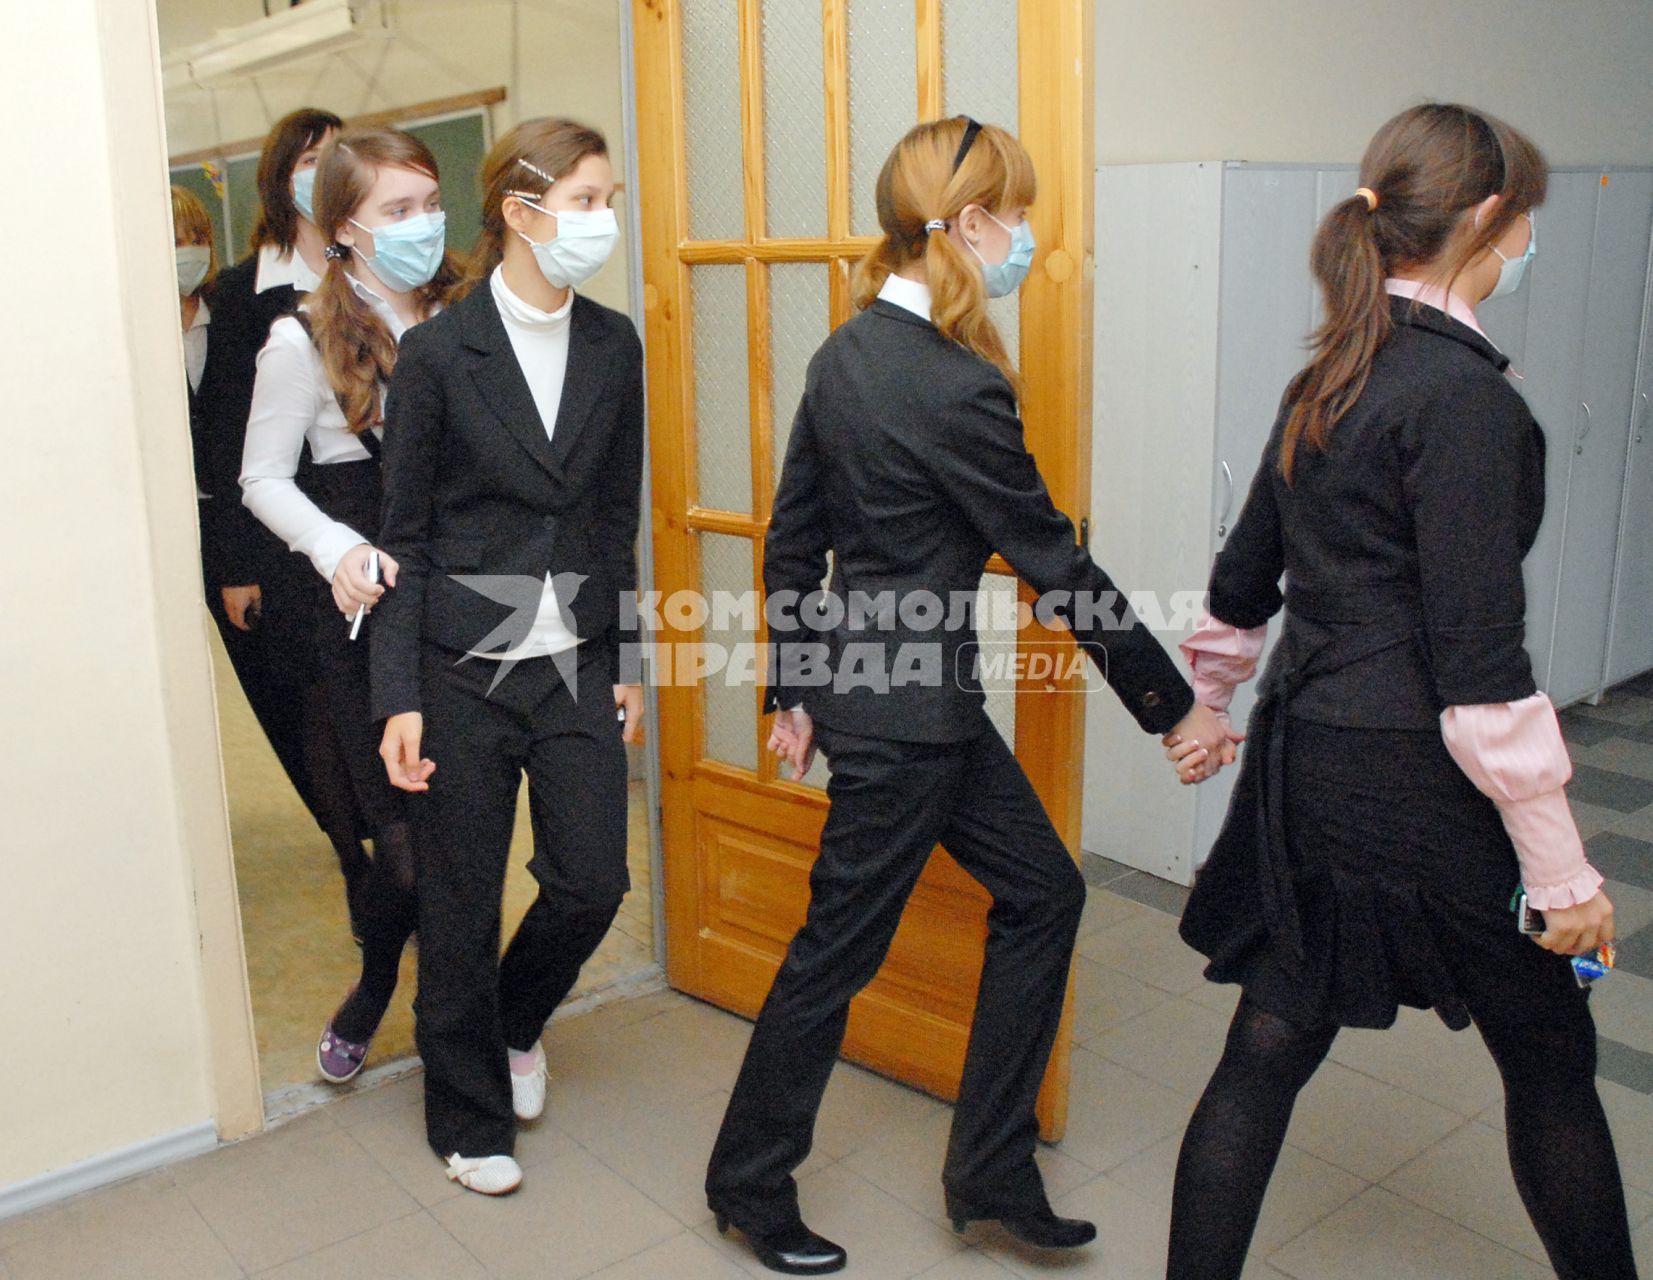 Школьники в медицинских повязках выходят из класса в коридор на перемену.